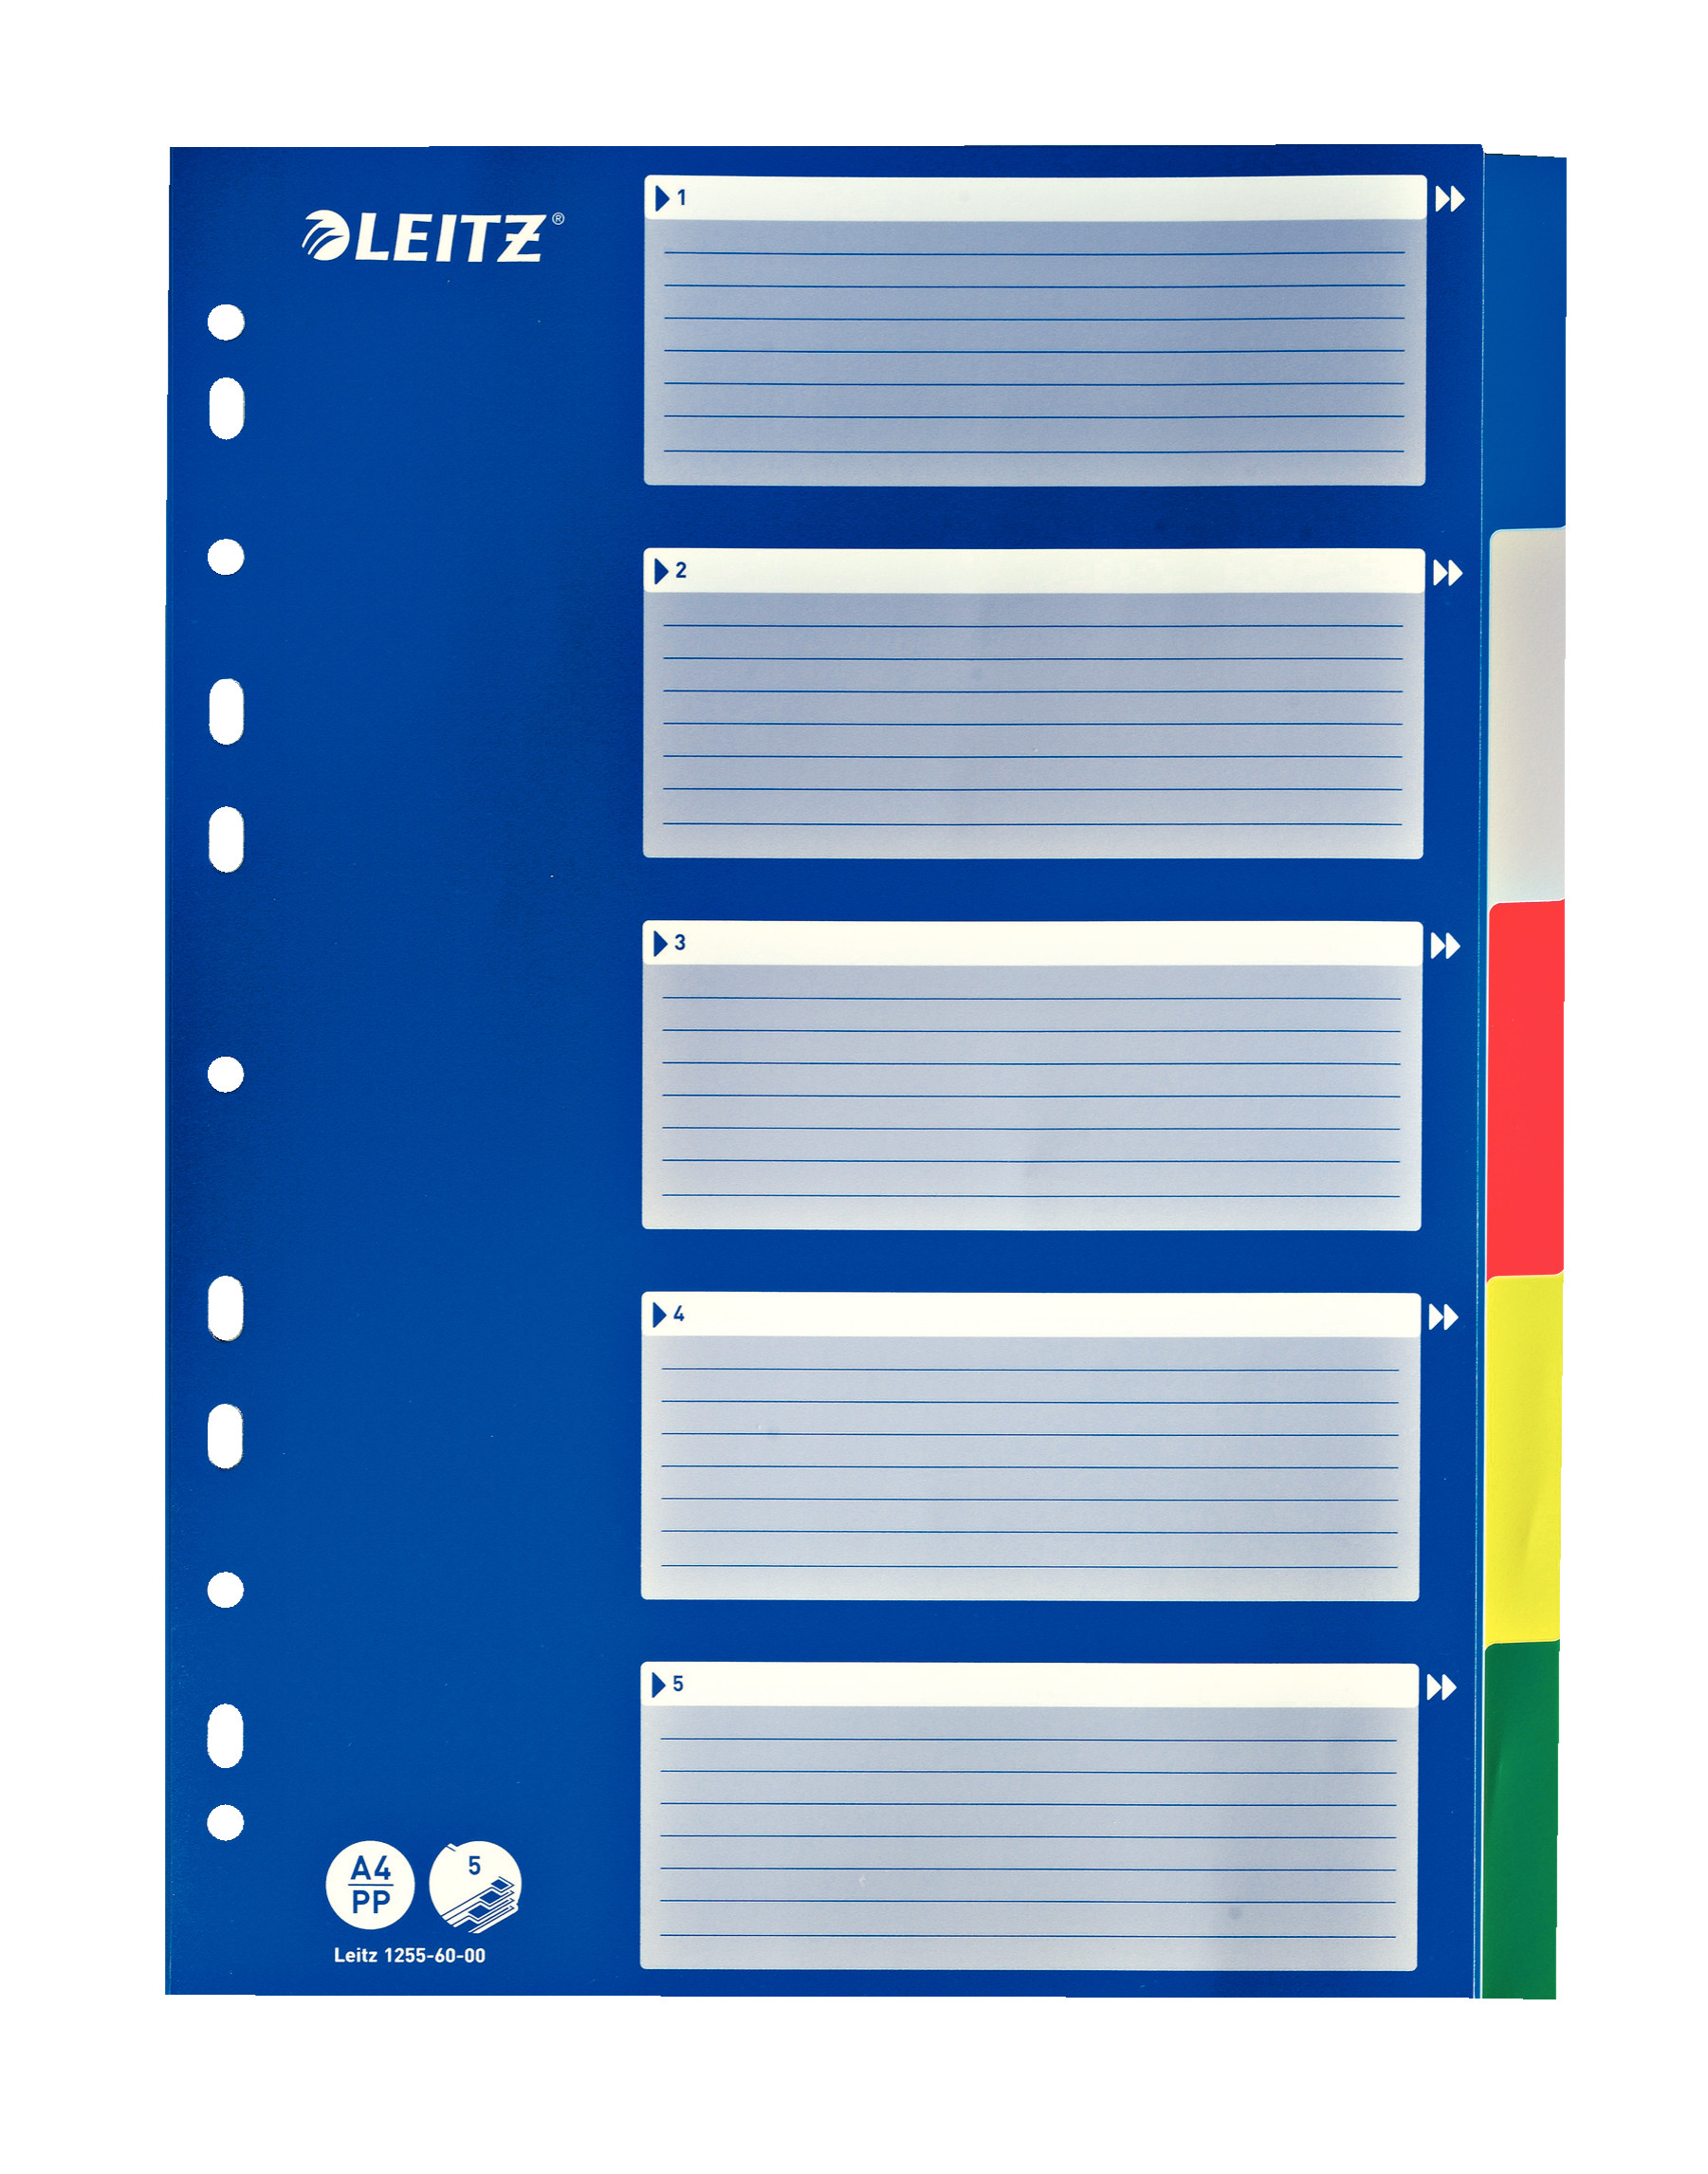 Leitz A4 Archiver Multicolor 5 Teilern, Kunststofflaschen Abdeckung Resistive Index, 12.556.000